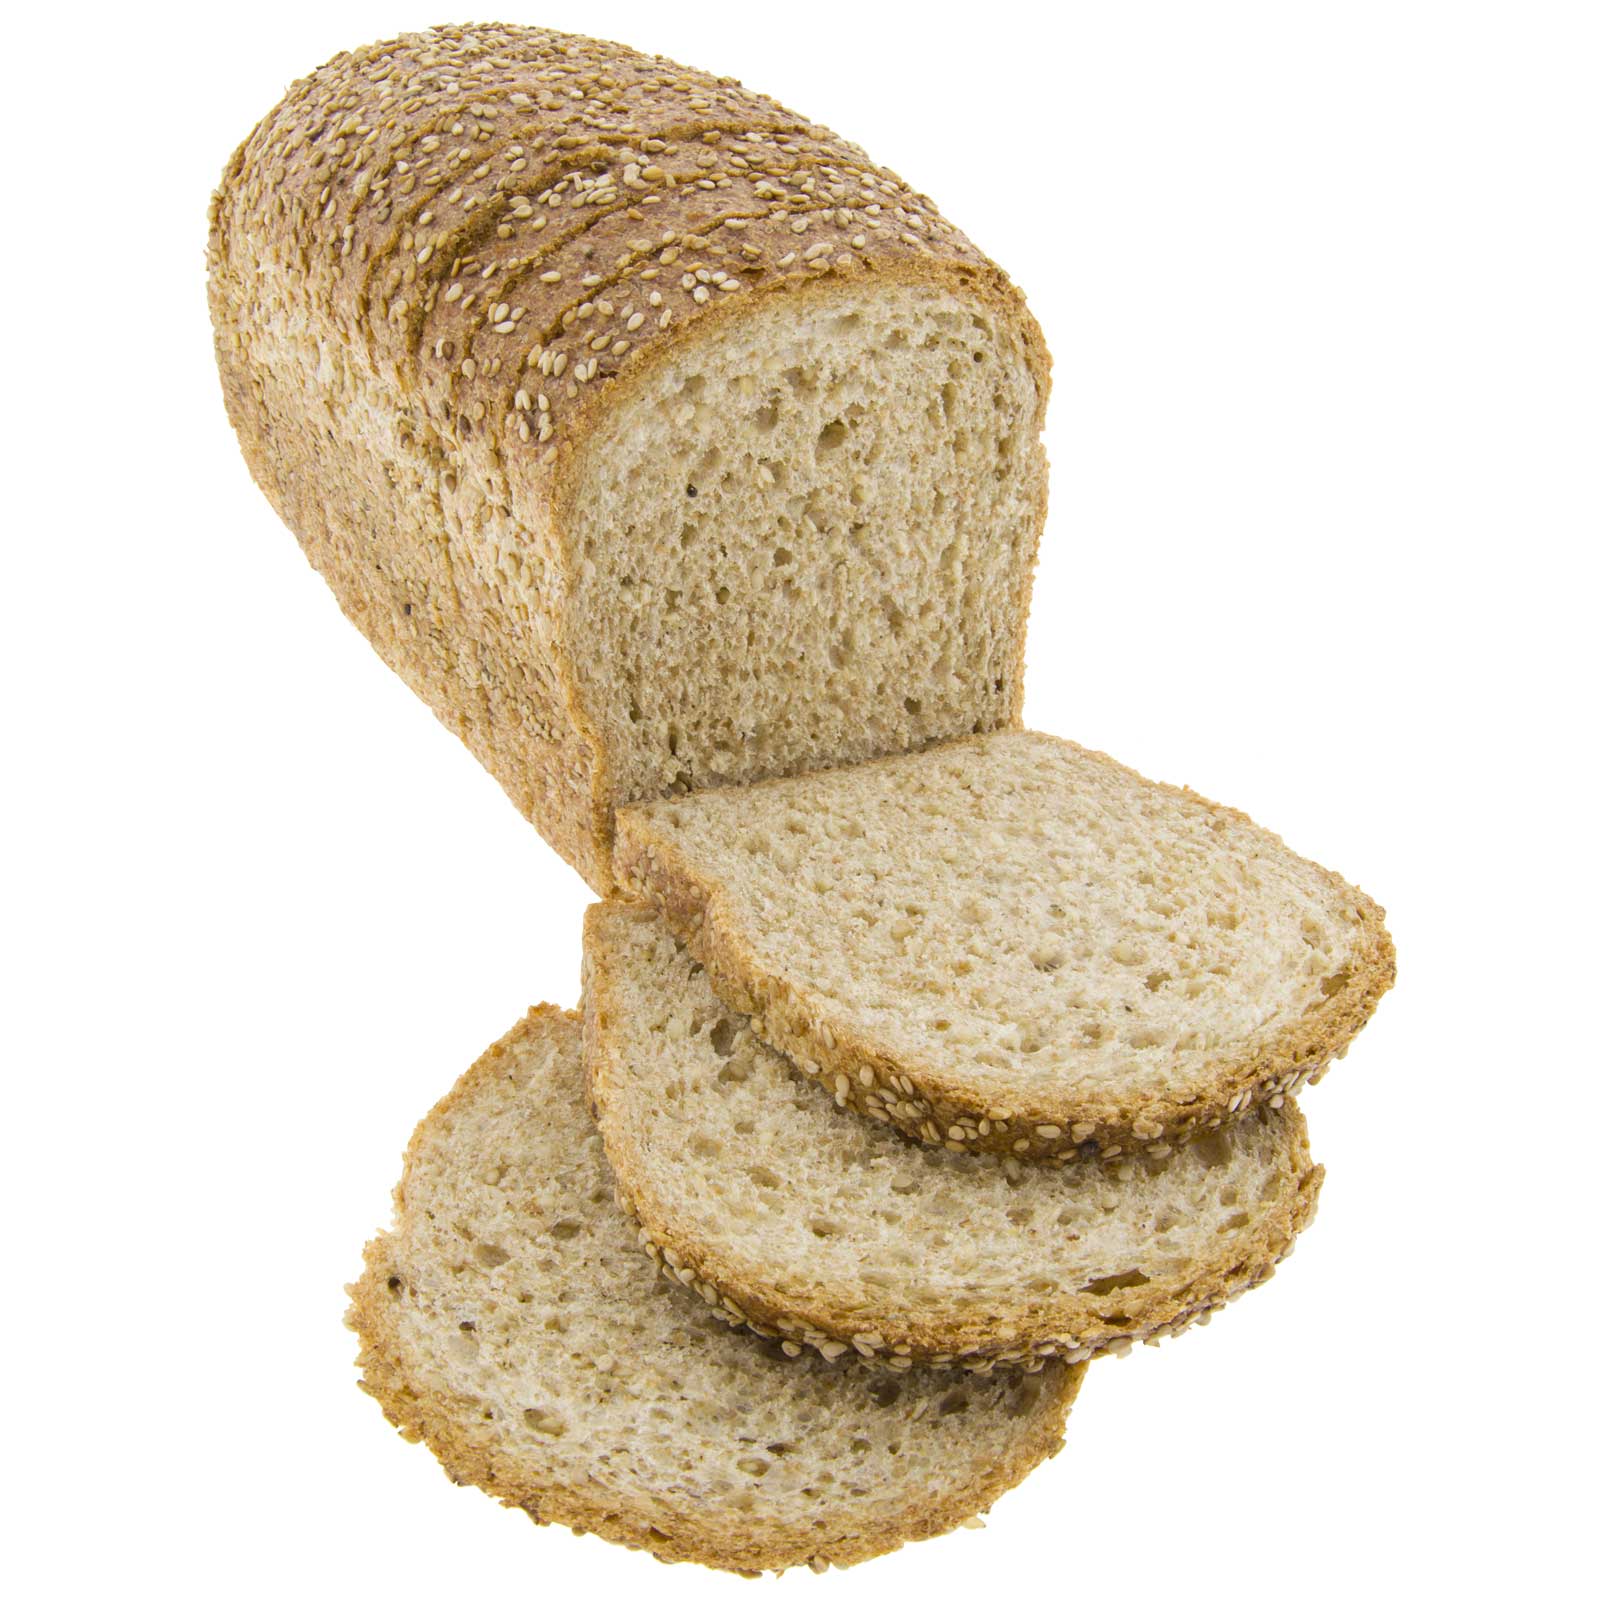 Full-length spell mold bread with ecological sesame 450g